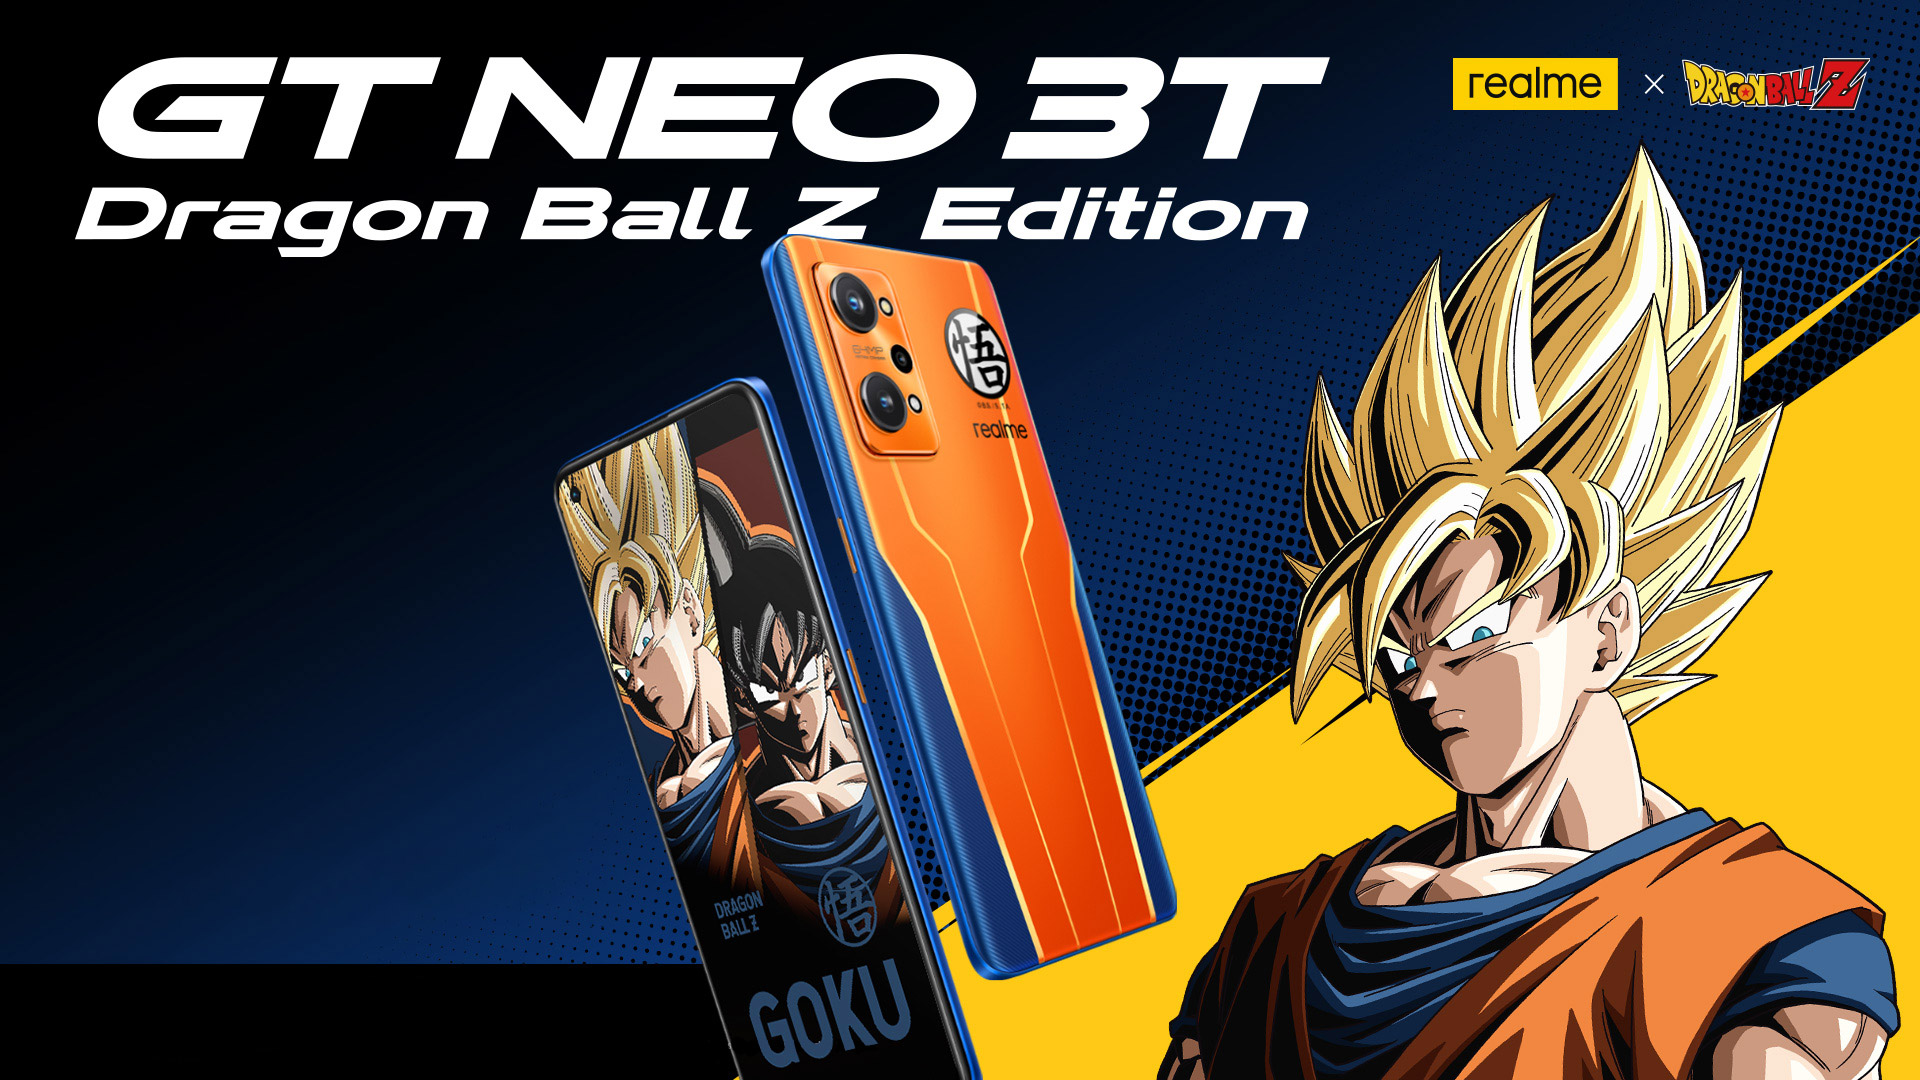 Realme GT NEO 3T Dragon Ball Z Edition GeekMeMore